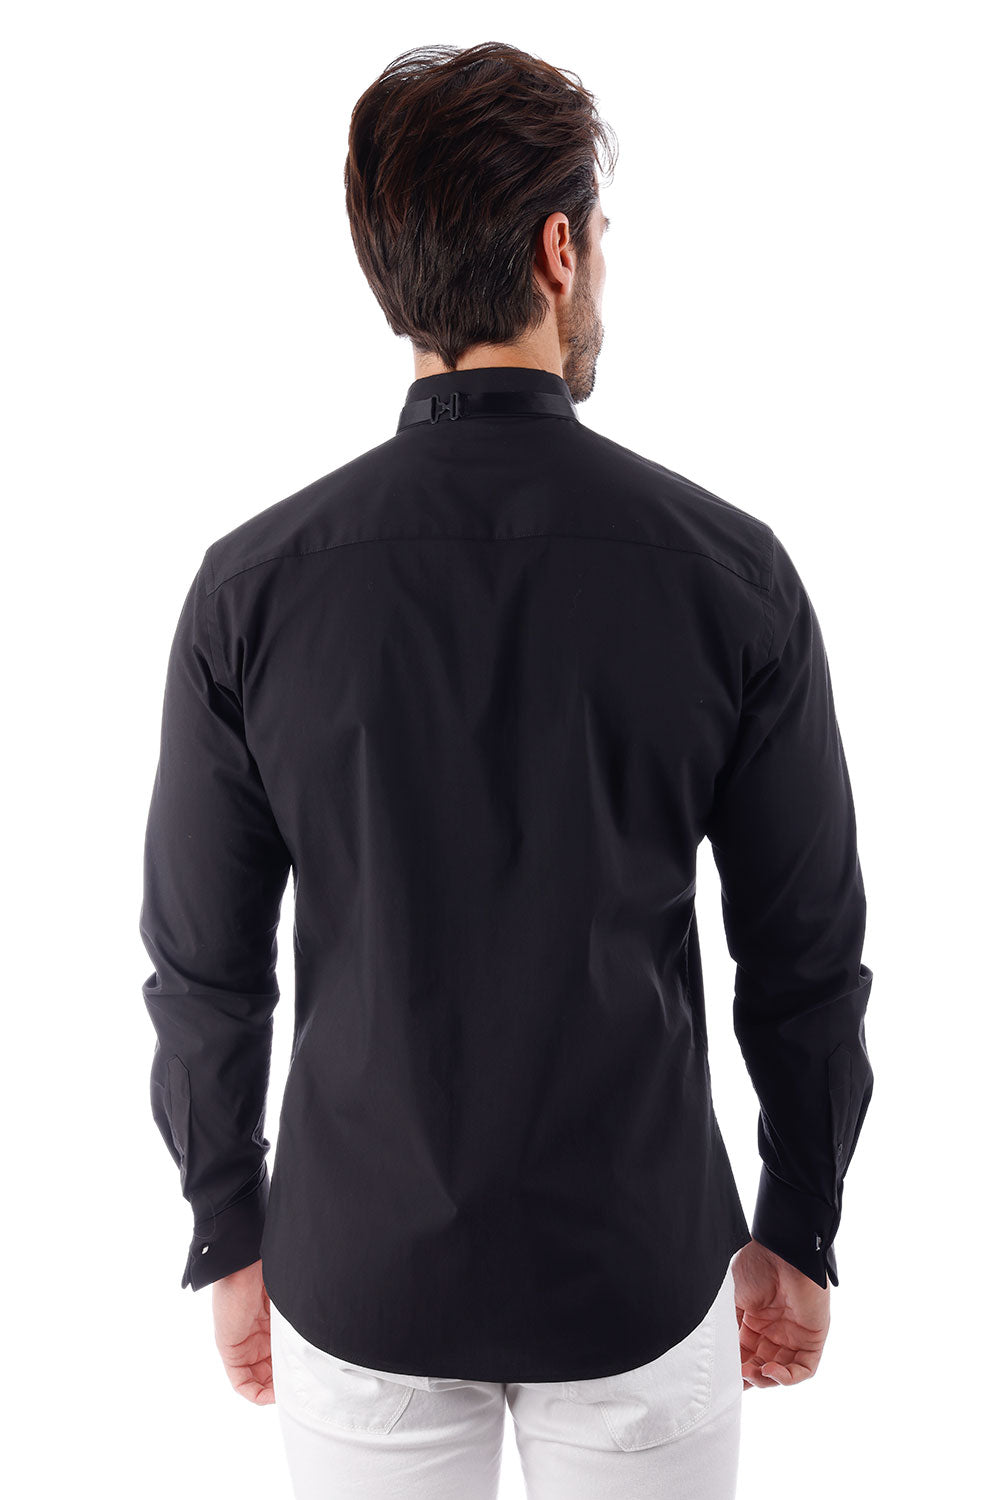 BARABAS Men's Solid Color Tuxedo Button Down Long Sleeve Shirt 4txs01 Black